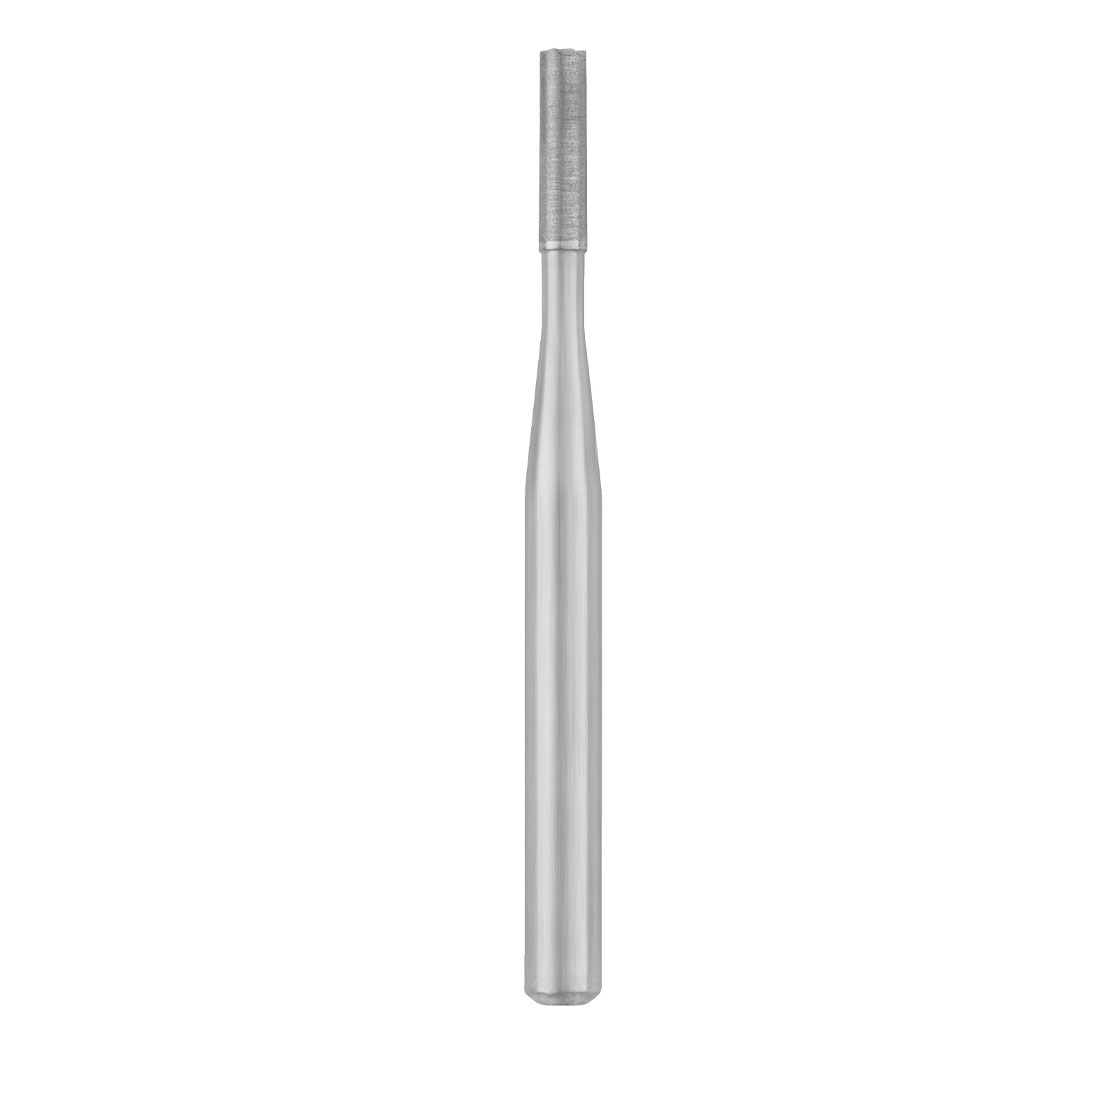 Carbide Bur, #957 End Cut, Friction Grip (19mm), Non-Sterile - 10/Box